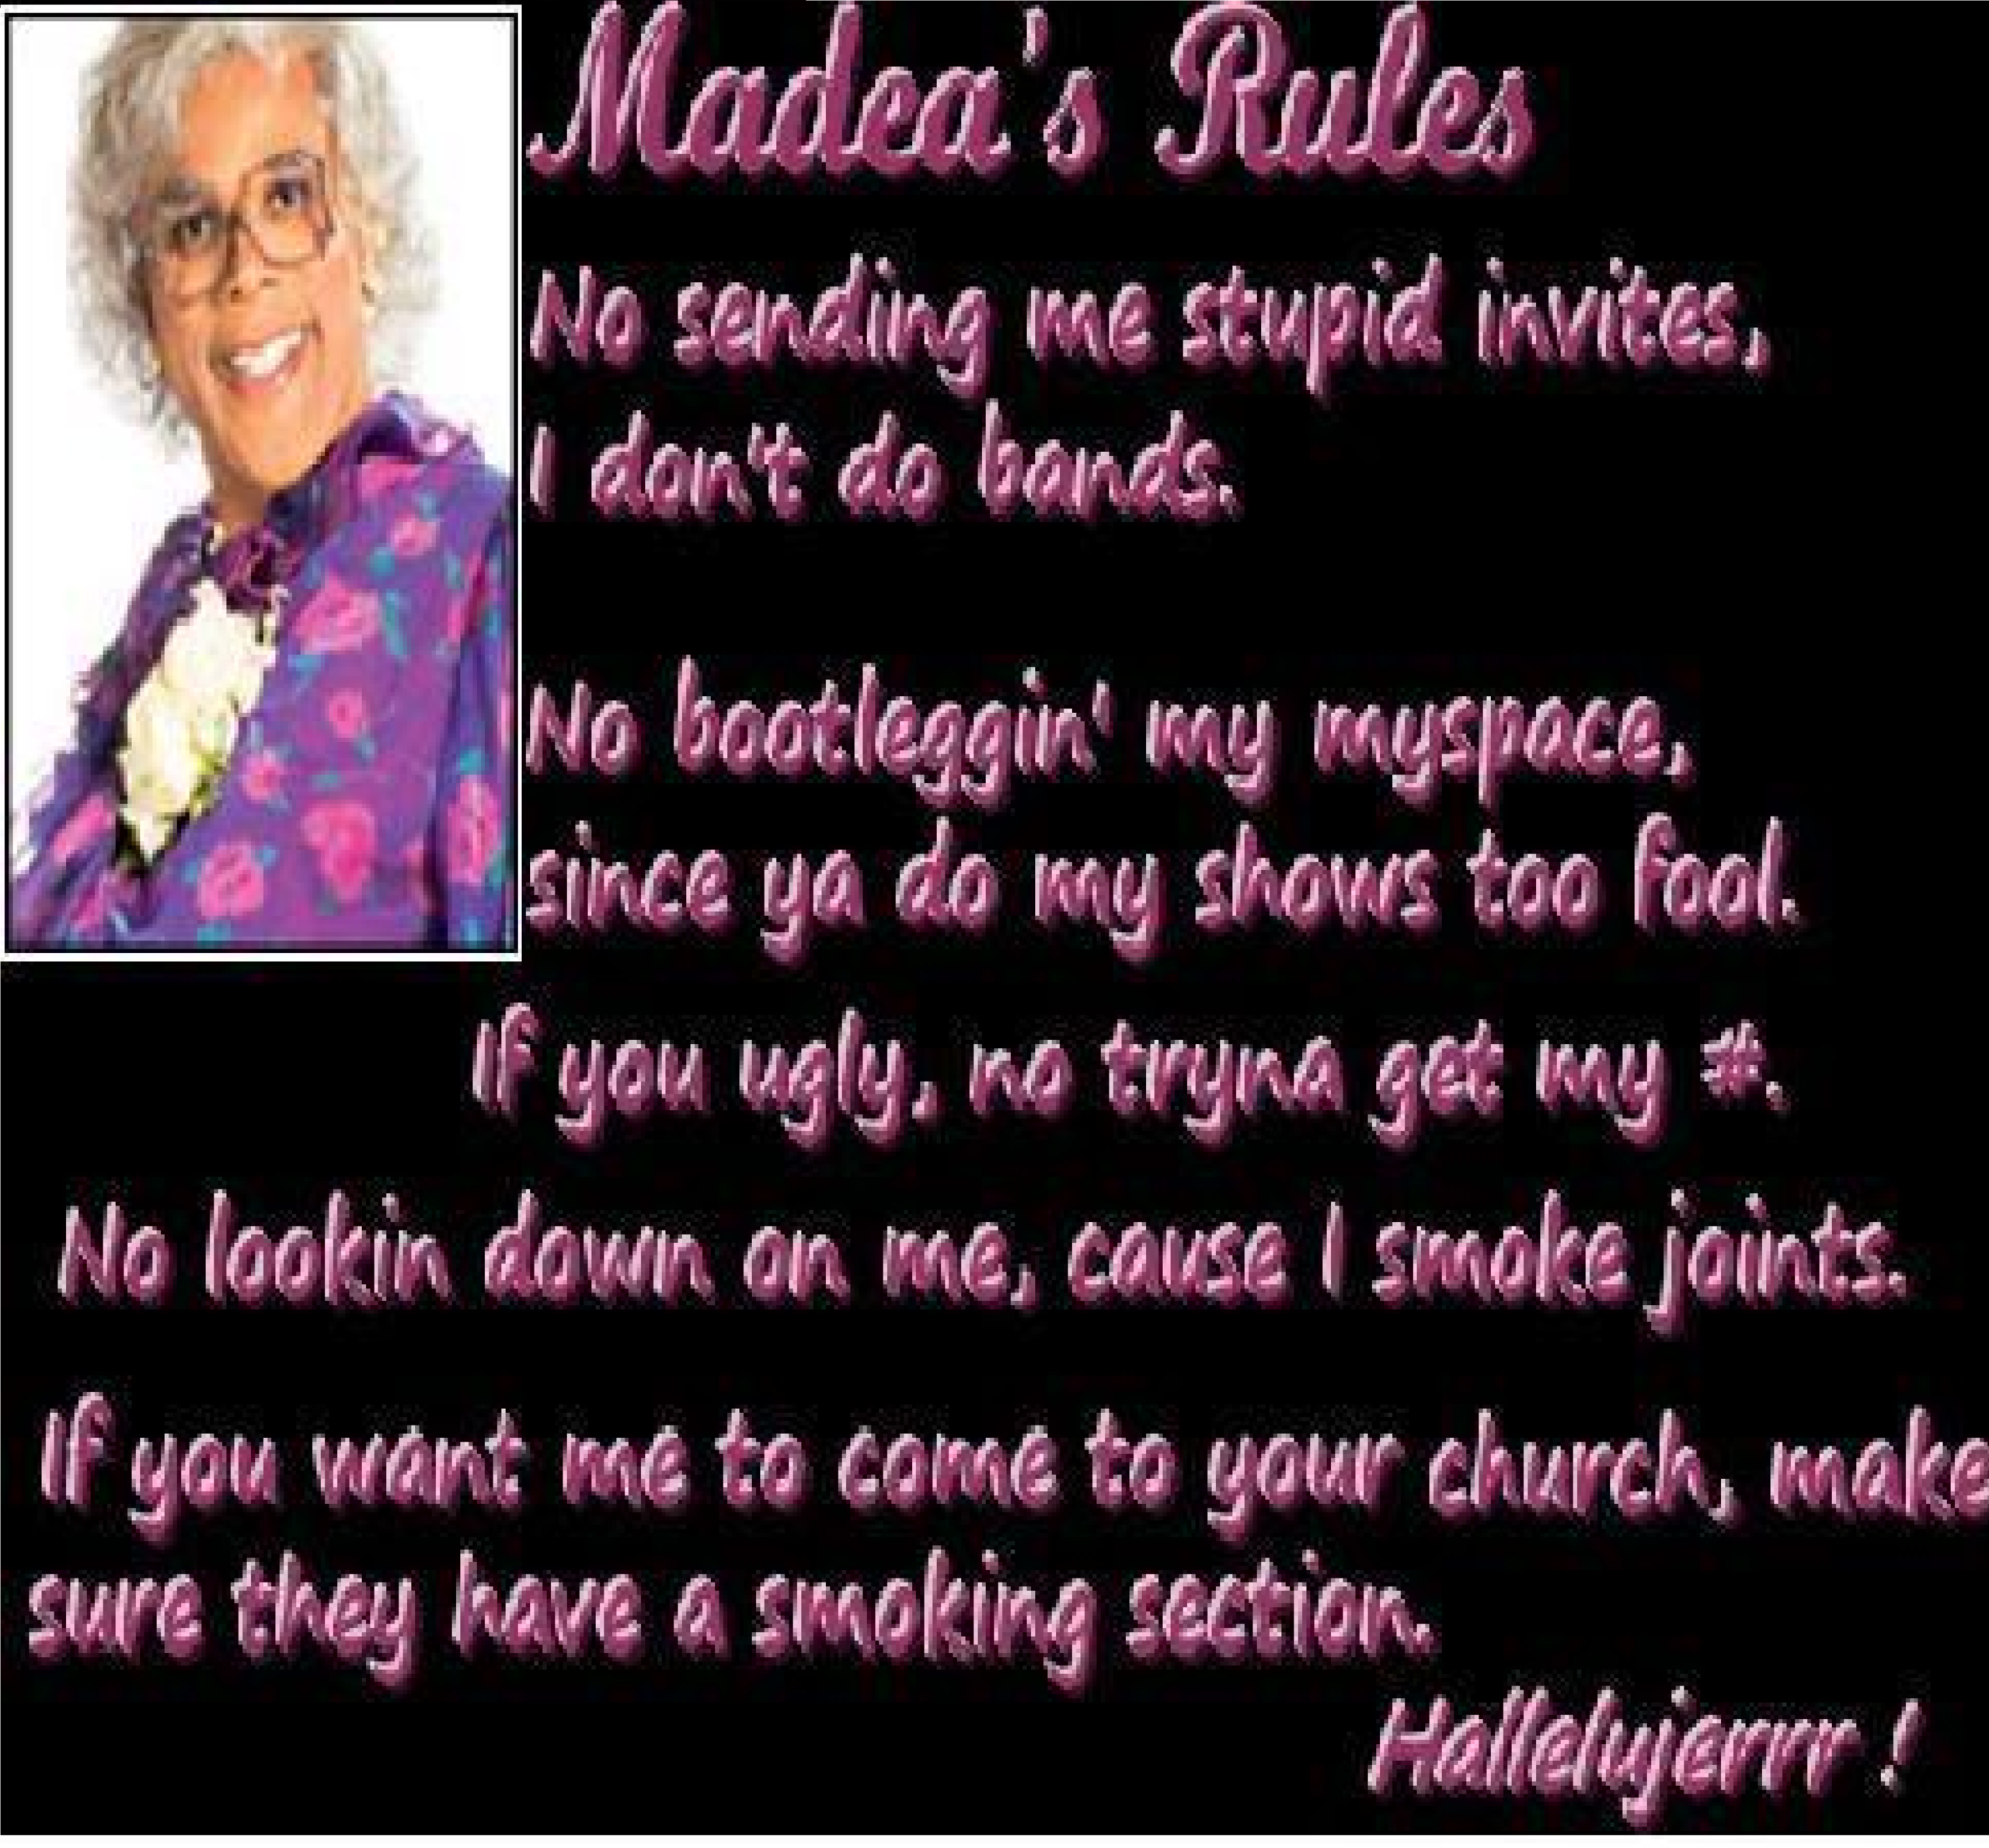  Madea's Rules